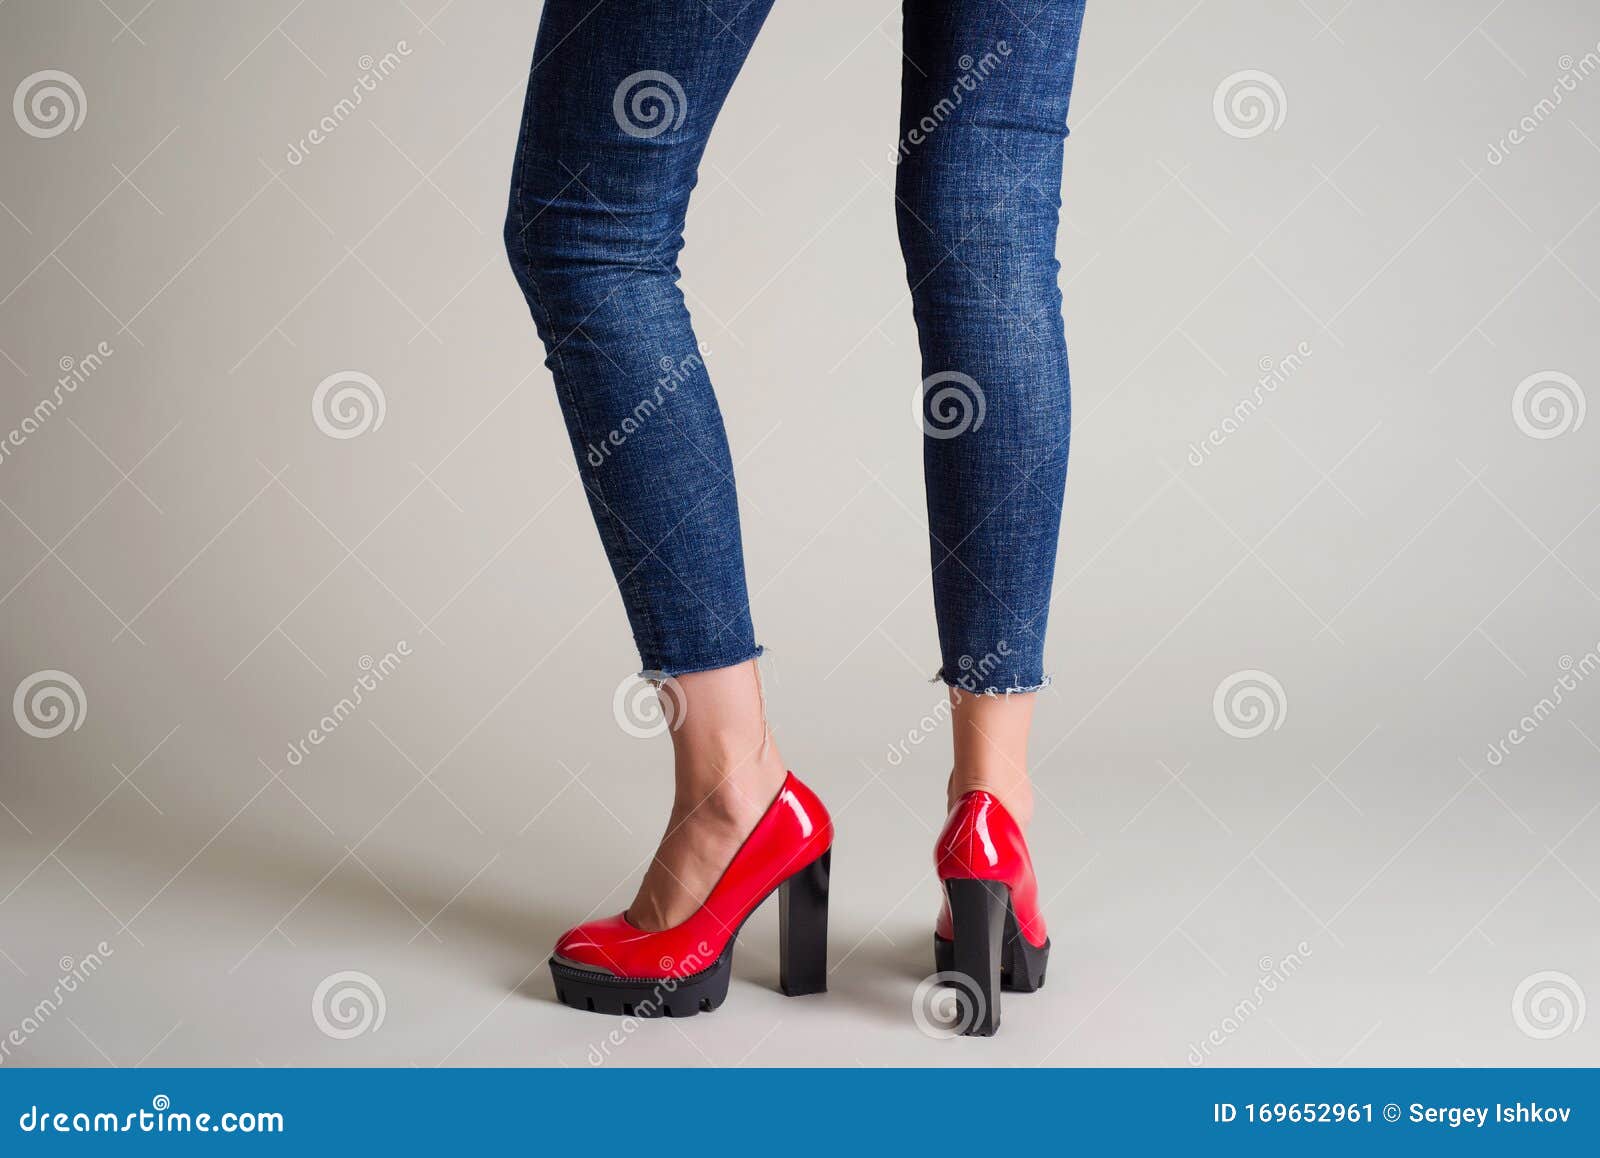 Mujer Jeans Zapatos Rojos Con Tacones Negros Posando Sobre Un Fondo Gris Imagen de archivo Imagen de pantalones, zapato: 169652961